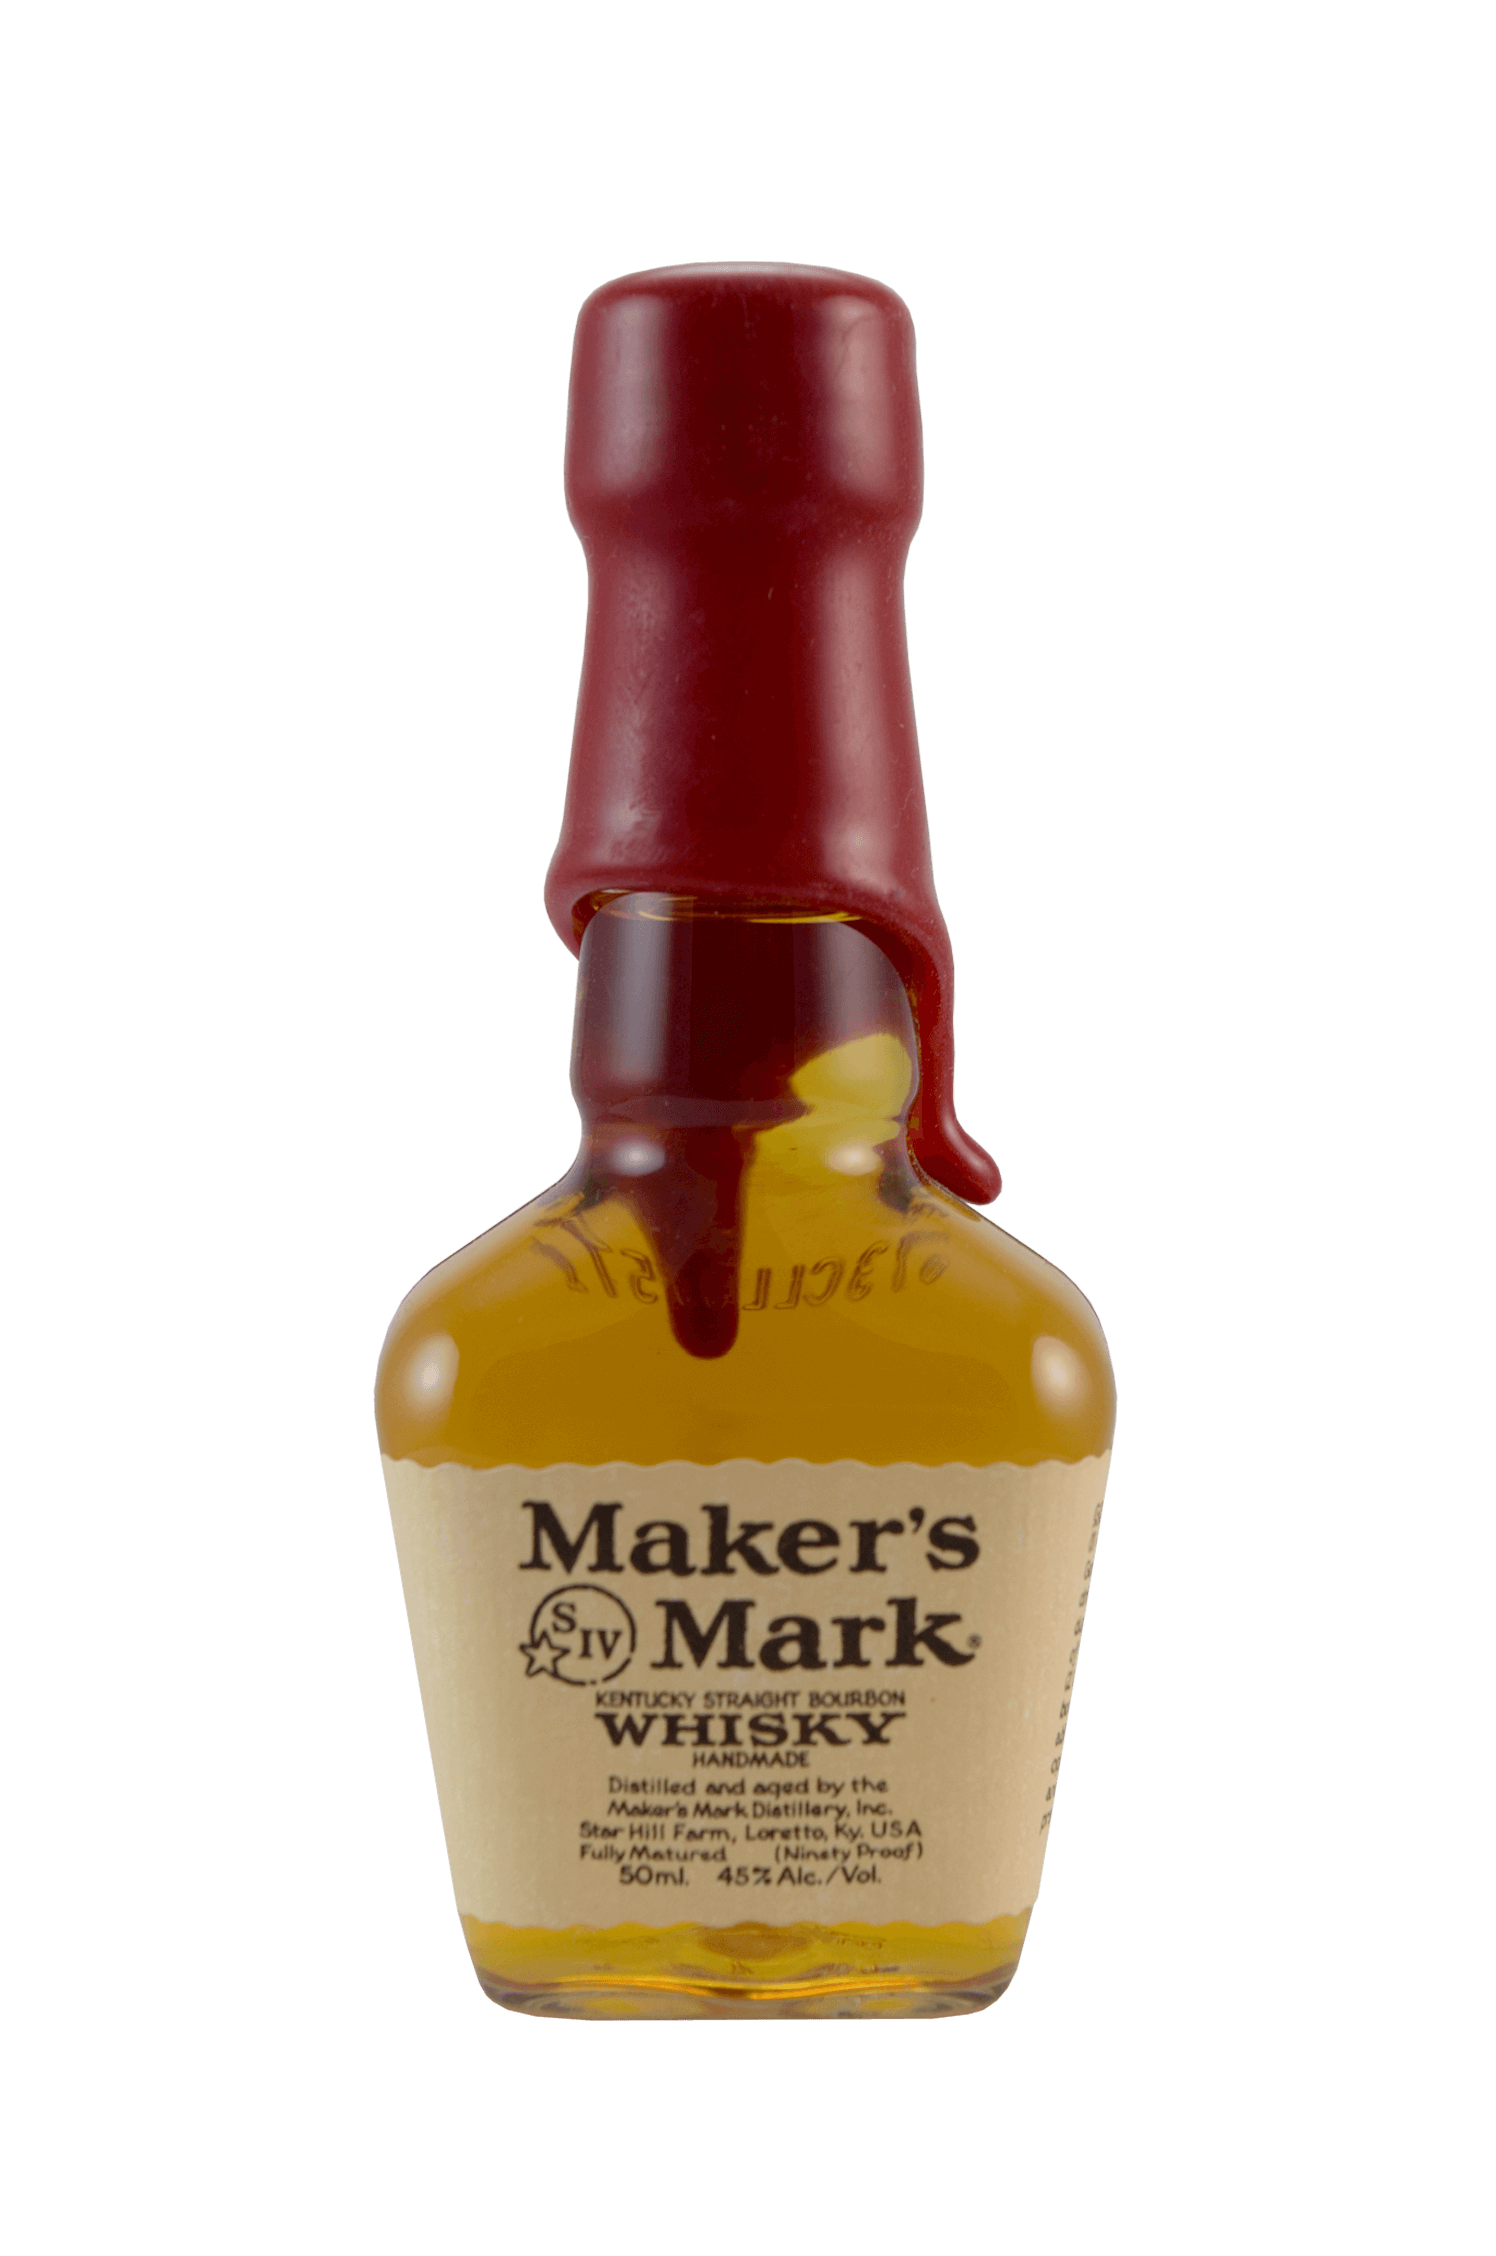 Maker’s Mark Whisky